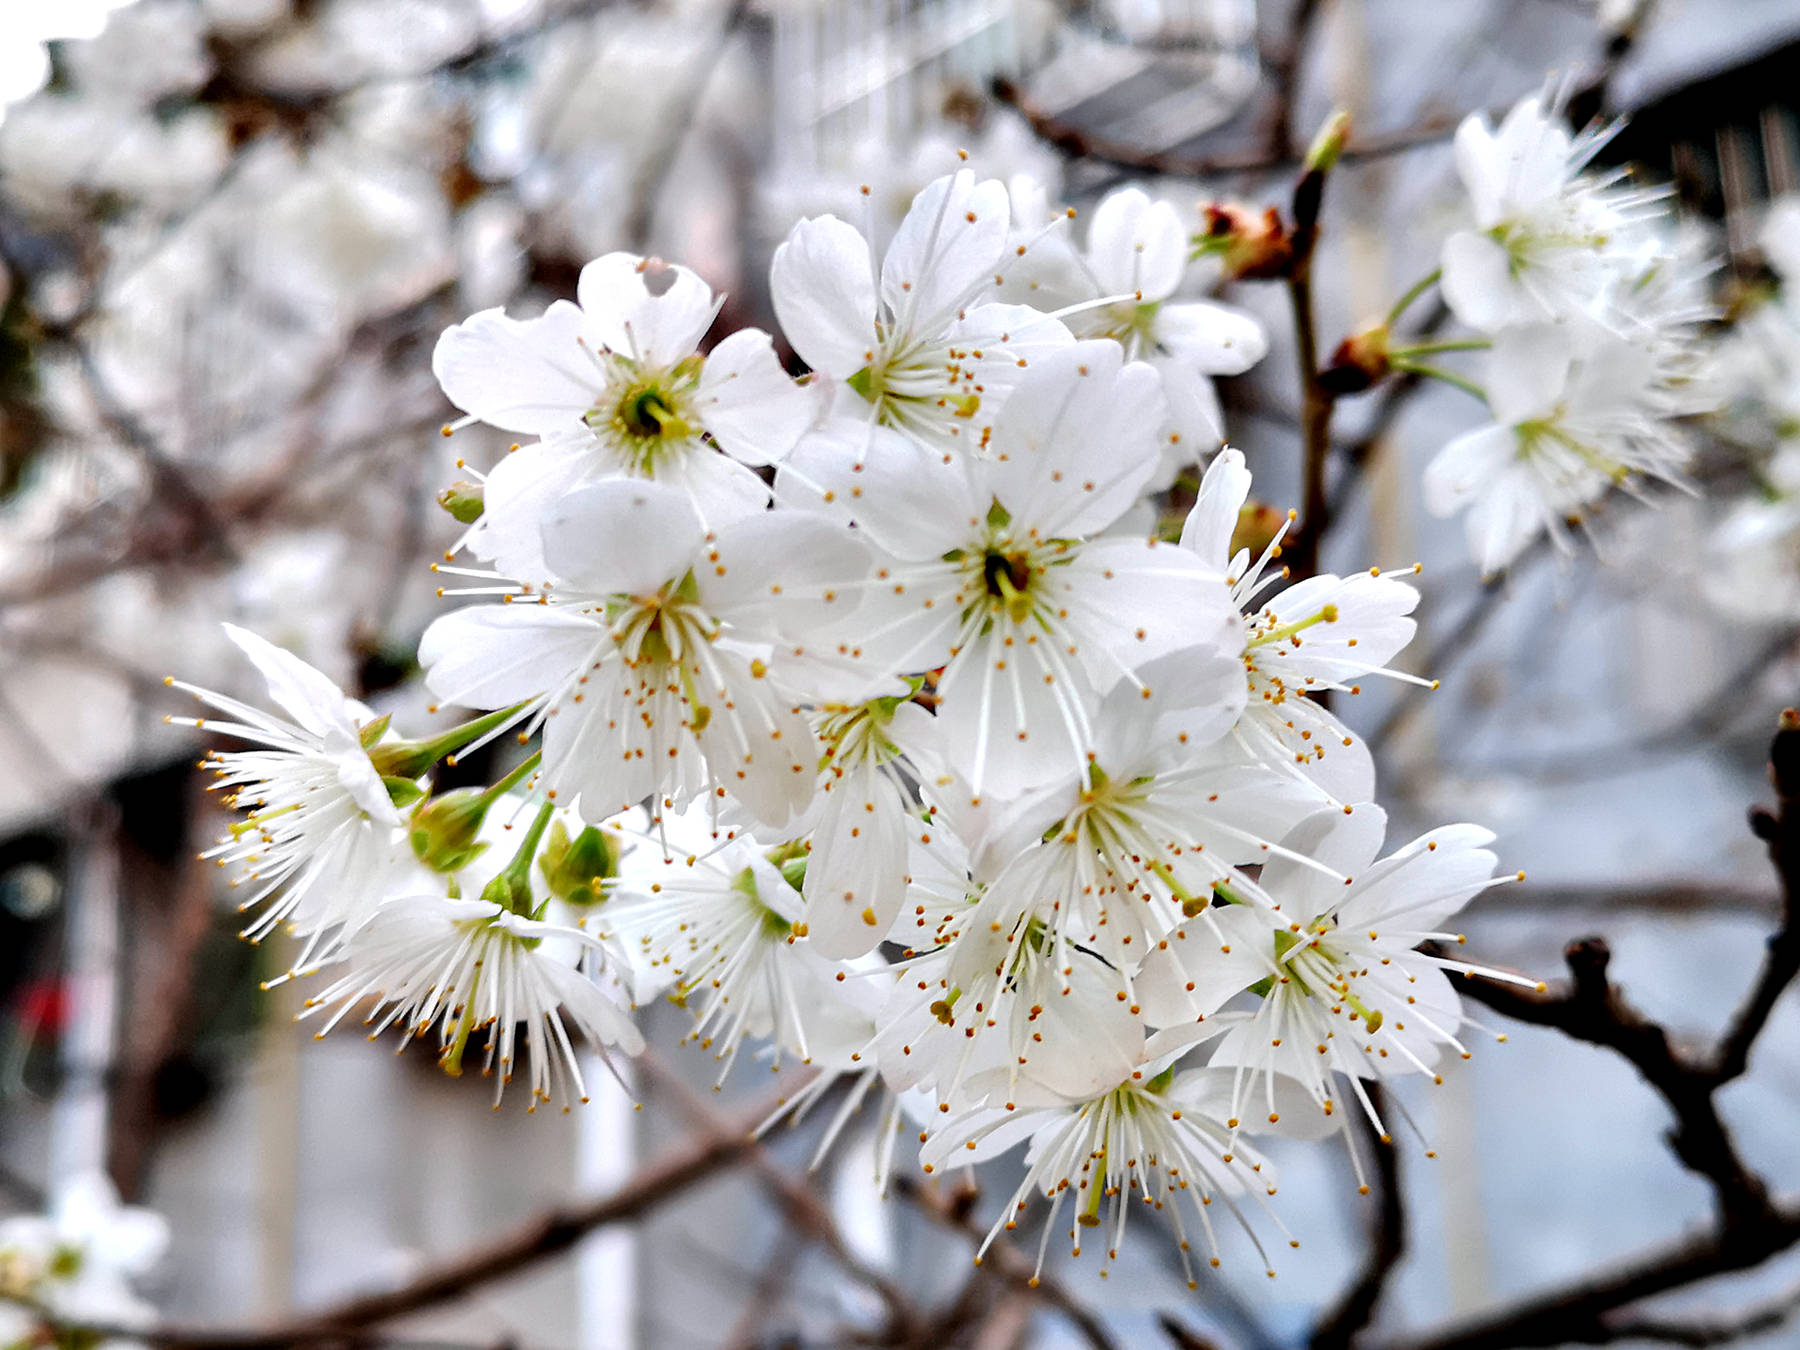 广元农村的樱桃花开啦,洁白的花朵如雪!